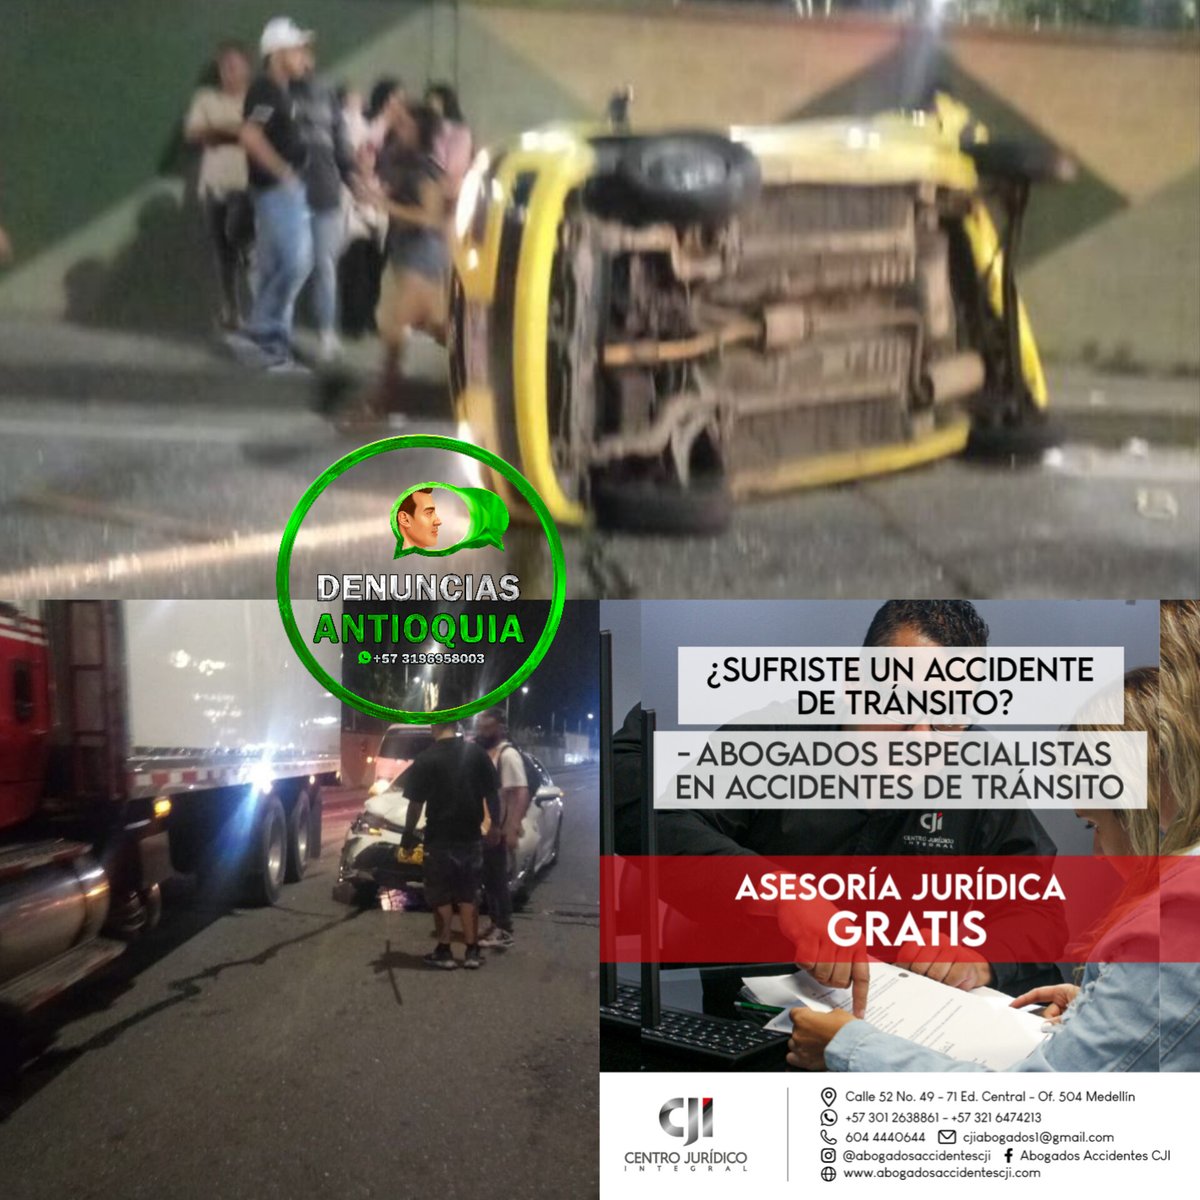 #Movilidad/ en la madrugada se presentó accidente de tránsito con vehículo tipo taxi volcado en Av regional sentido norte sur, pasando las canchas de Tulio Ospina en Bello, por los talleres de Metro